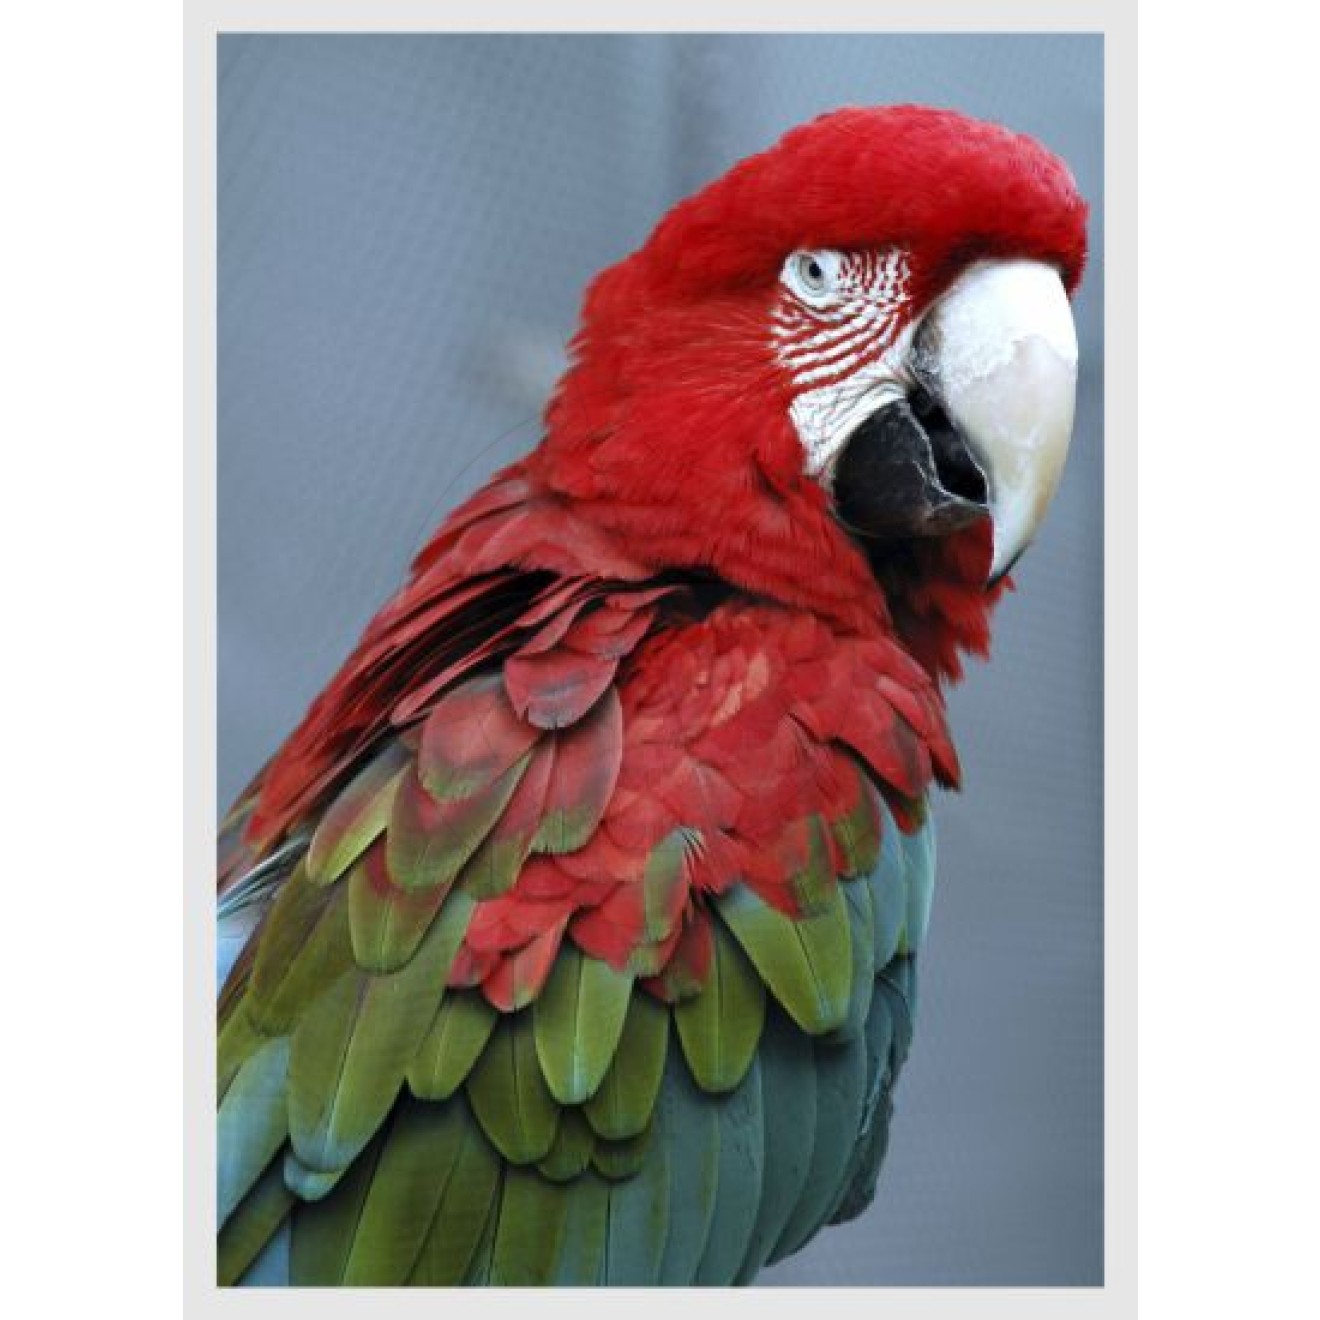 parrot